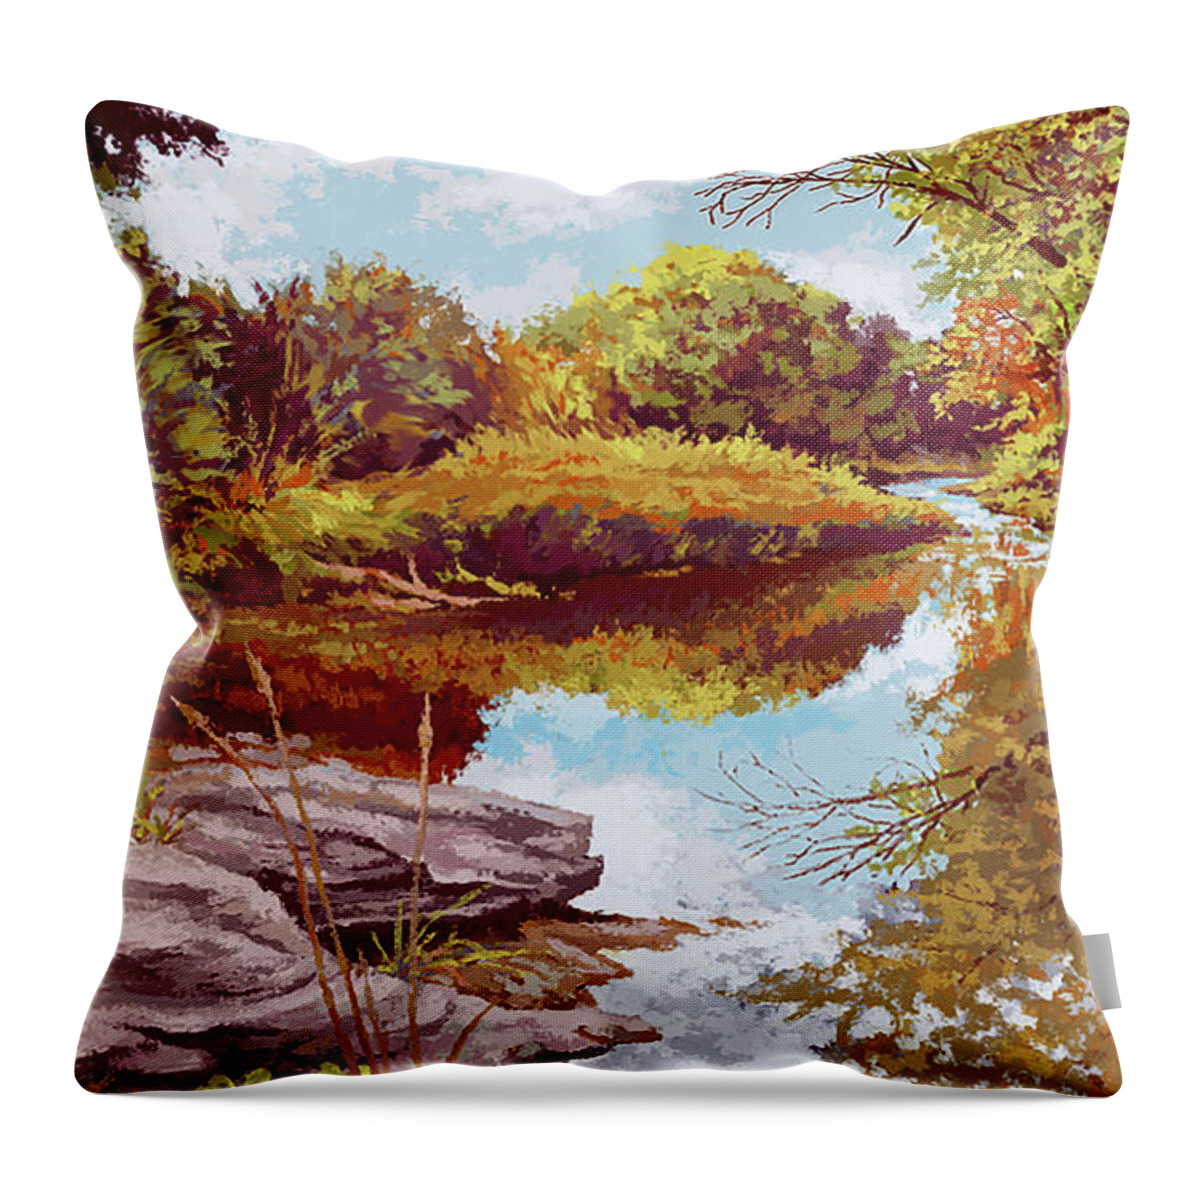 Stillwater Throw Pillow featuring the painting Stillwater by Hans Neuhart